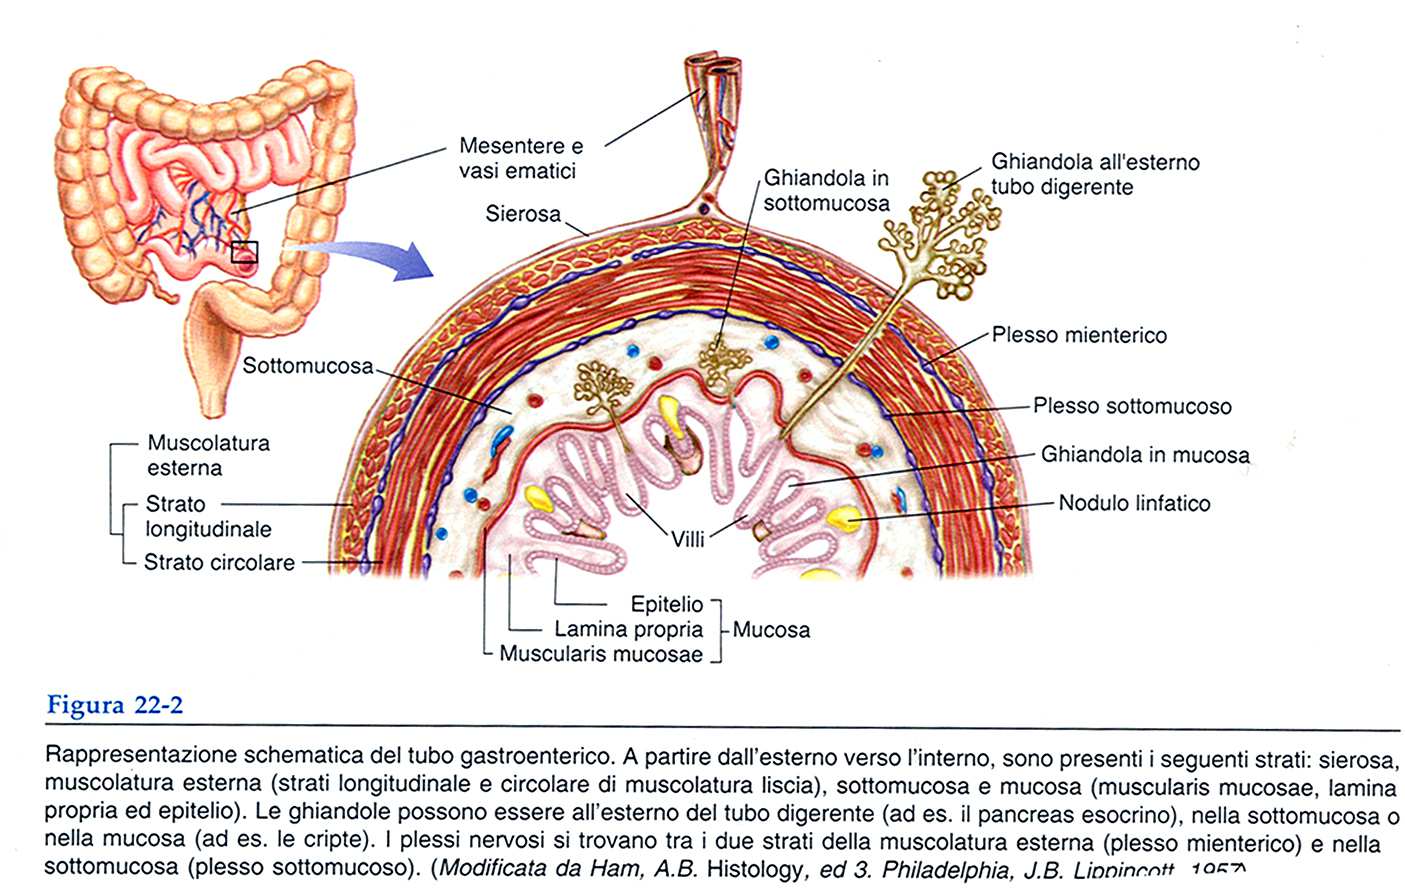 Struttura del canale digerente MESENTERE: sistema di membrane che sostiene i visceri nella cavità addominale 1.